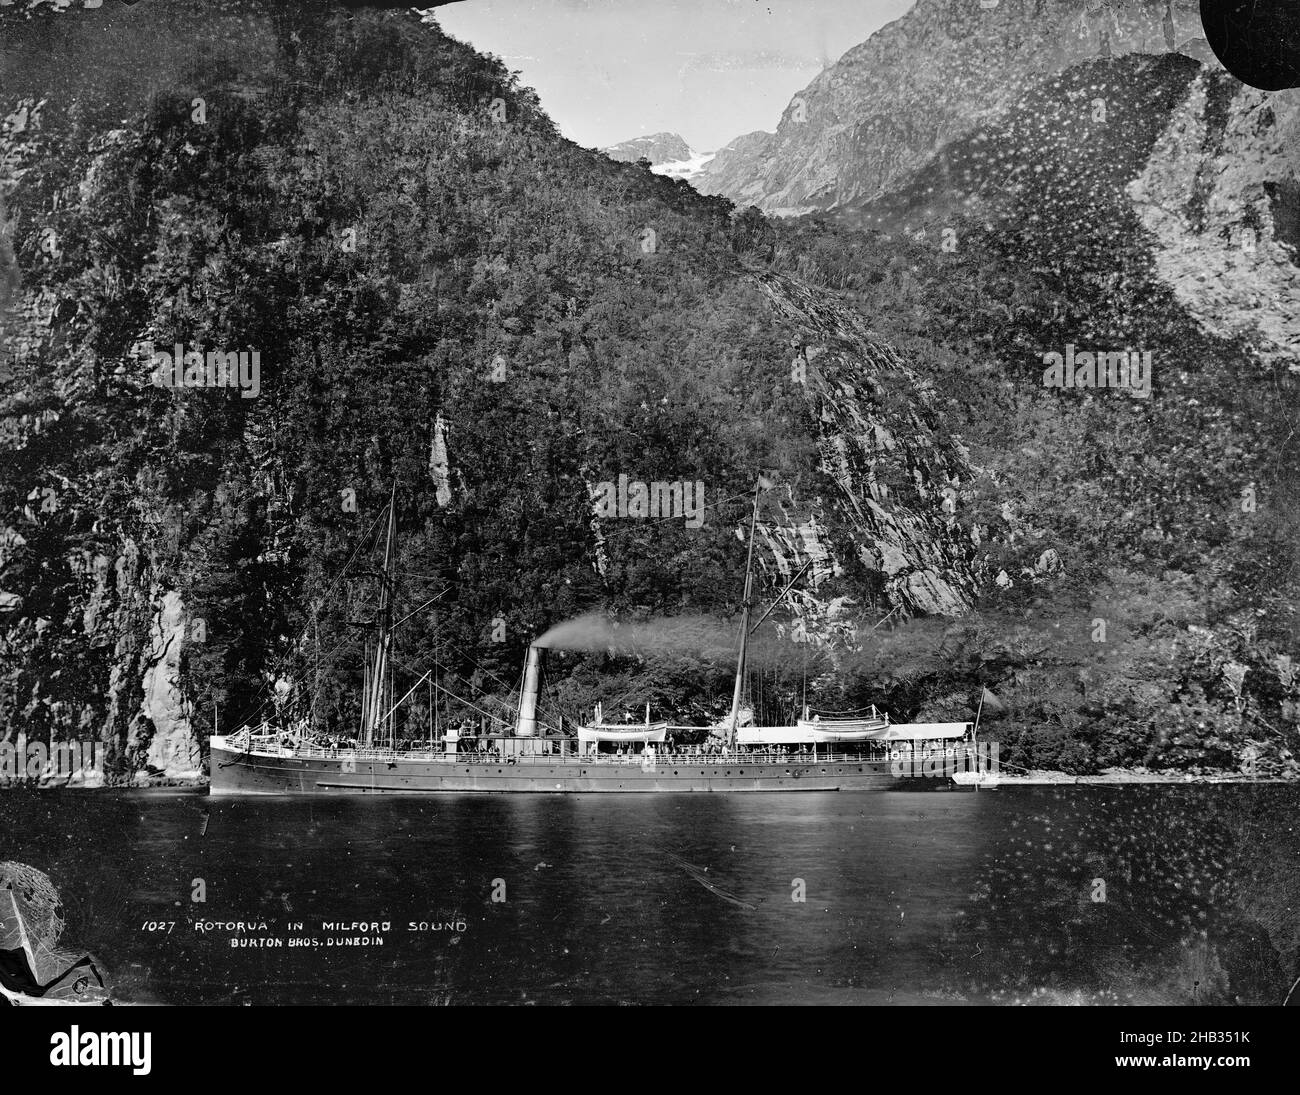 Rotorua à Milford Sound, studio Burton Brothers, studio de photographie, 1879, Dunedin,Photographie en noir et blanc, Boat est le Rotorua de Union Steam Ship Co Banque D'Images